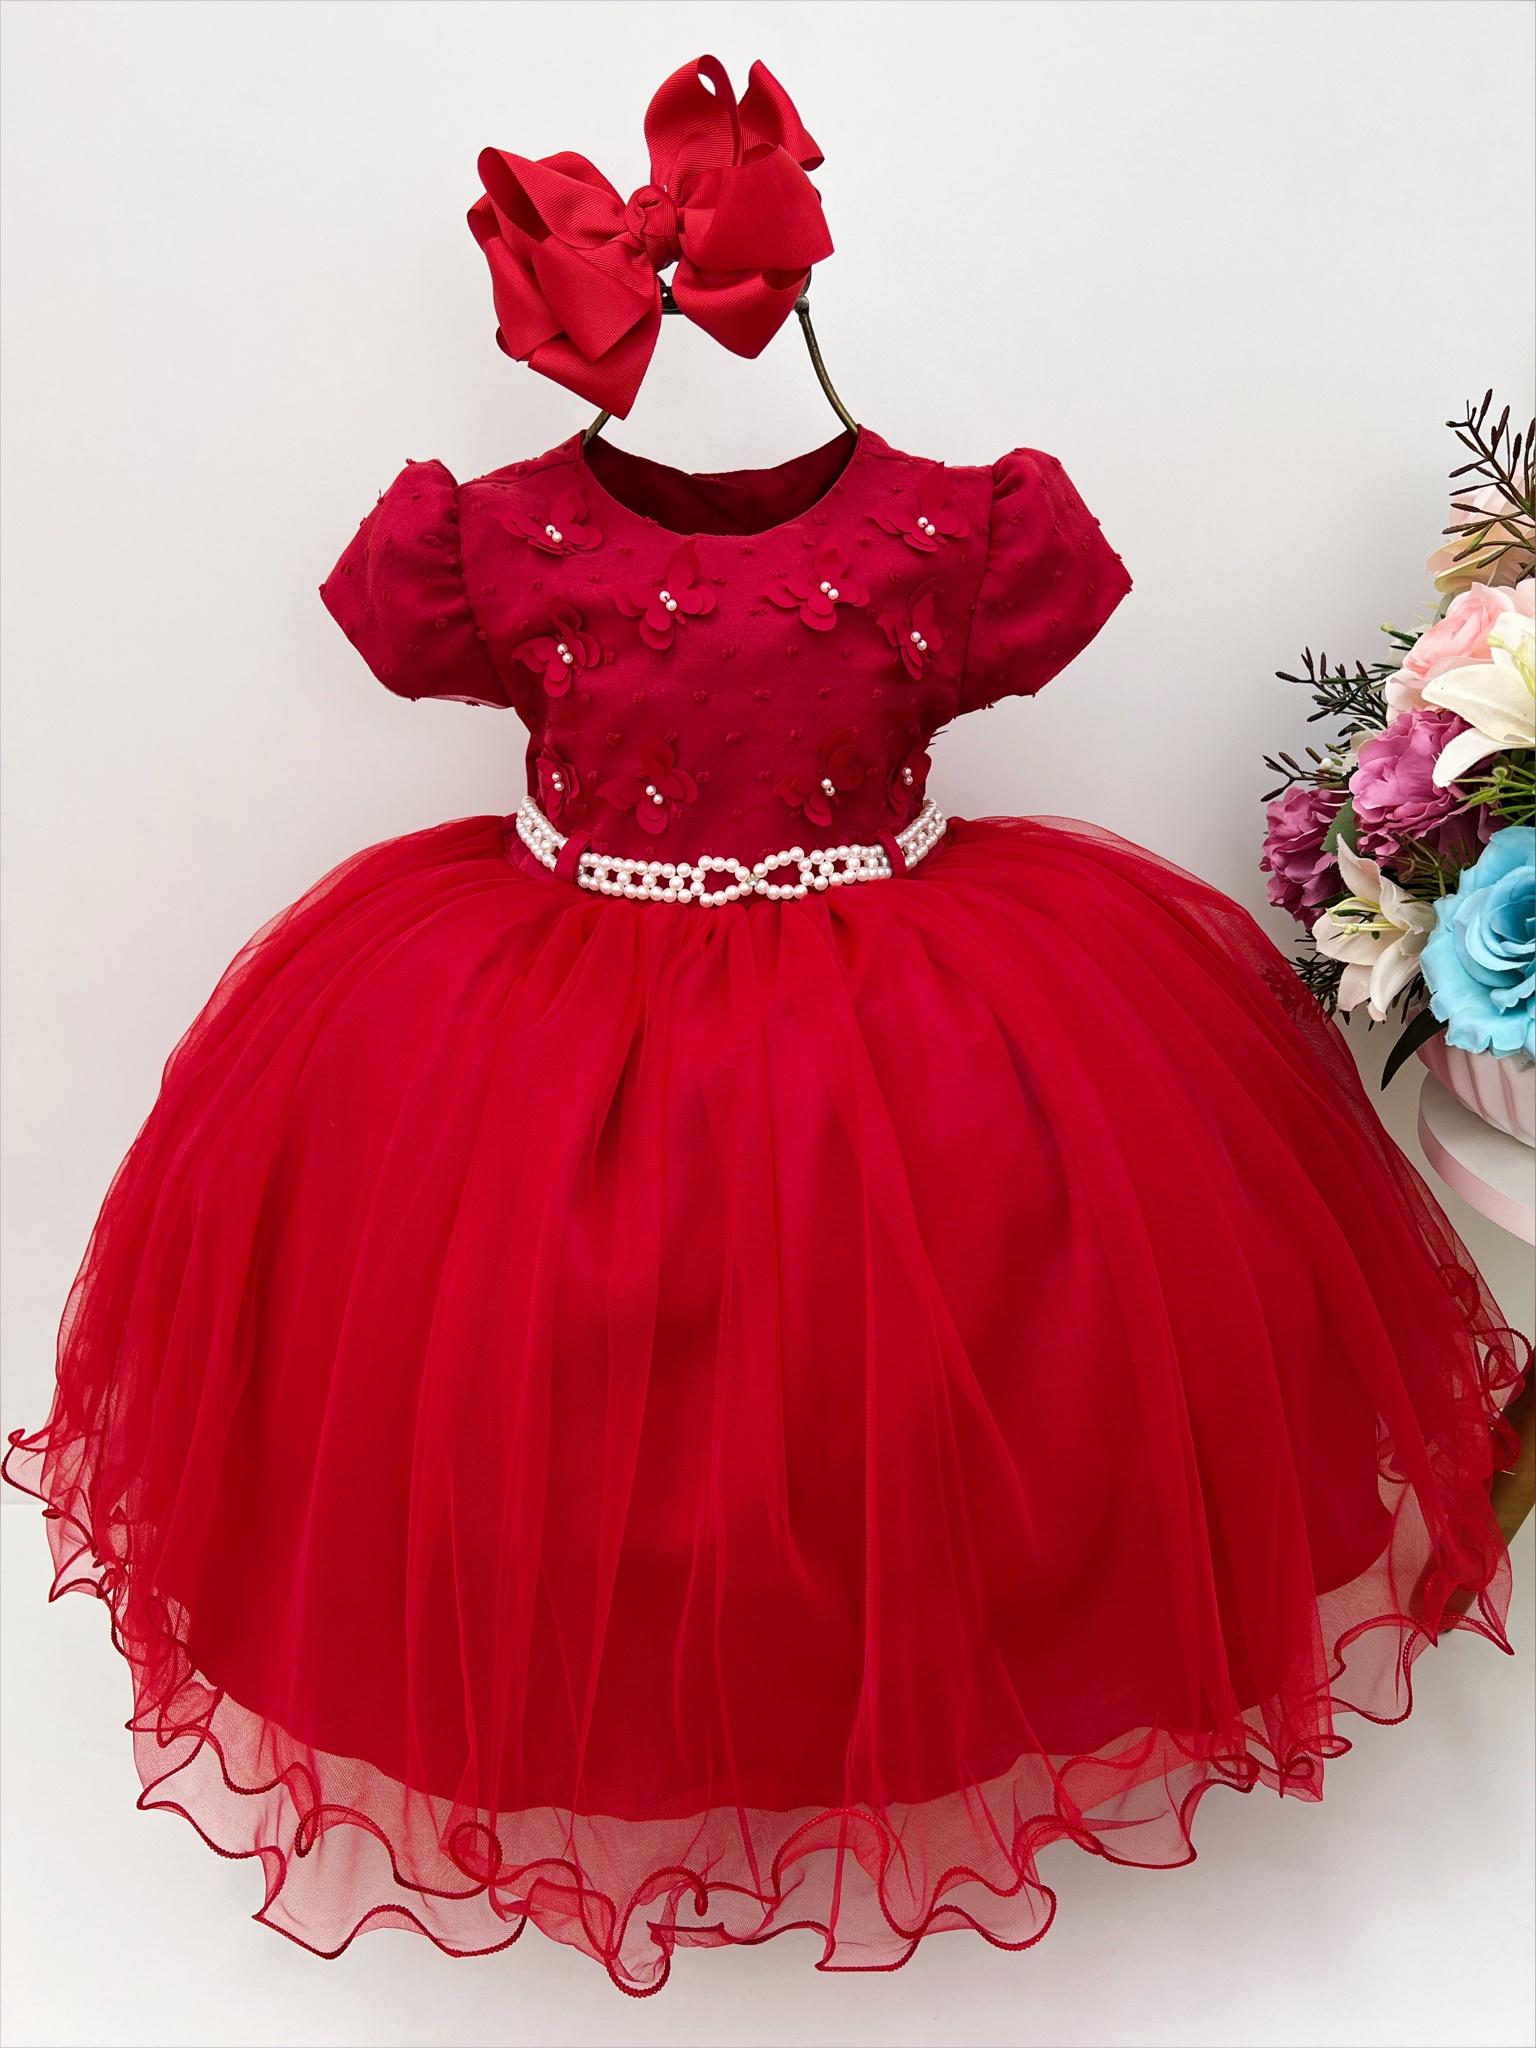 Vestido Infantil Vermelho C/ Aplique de Borboletas e Pérolas